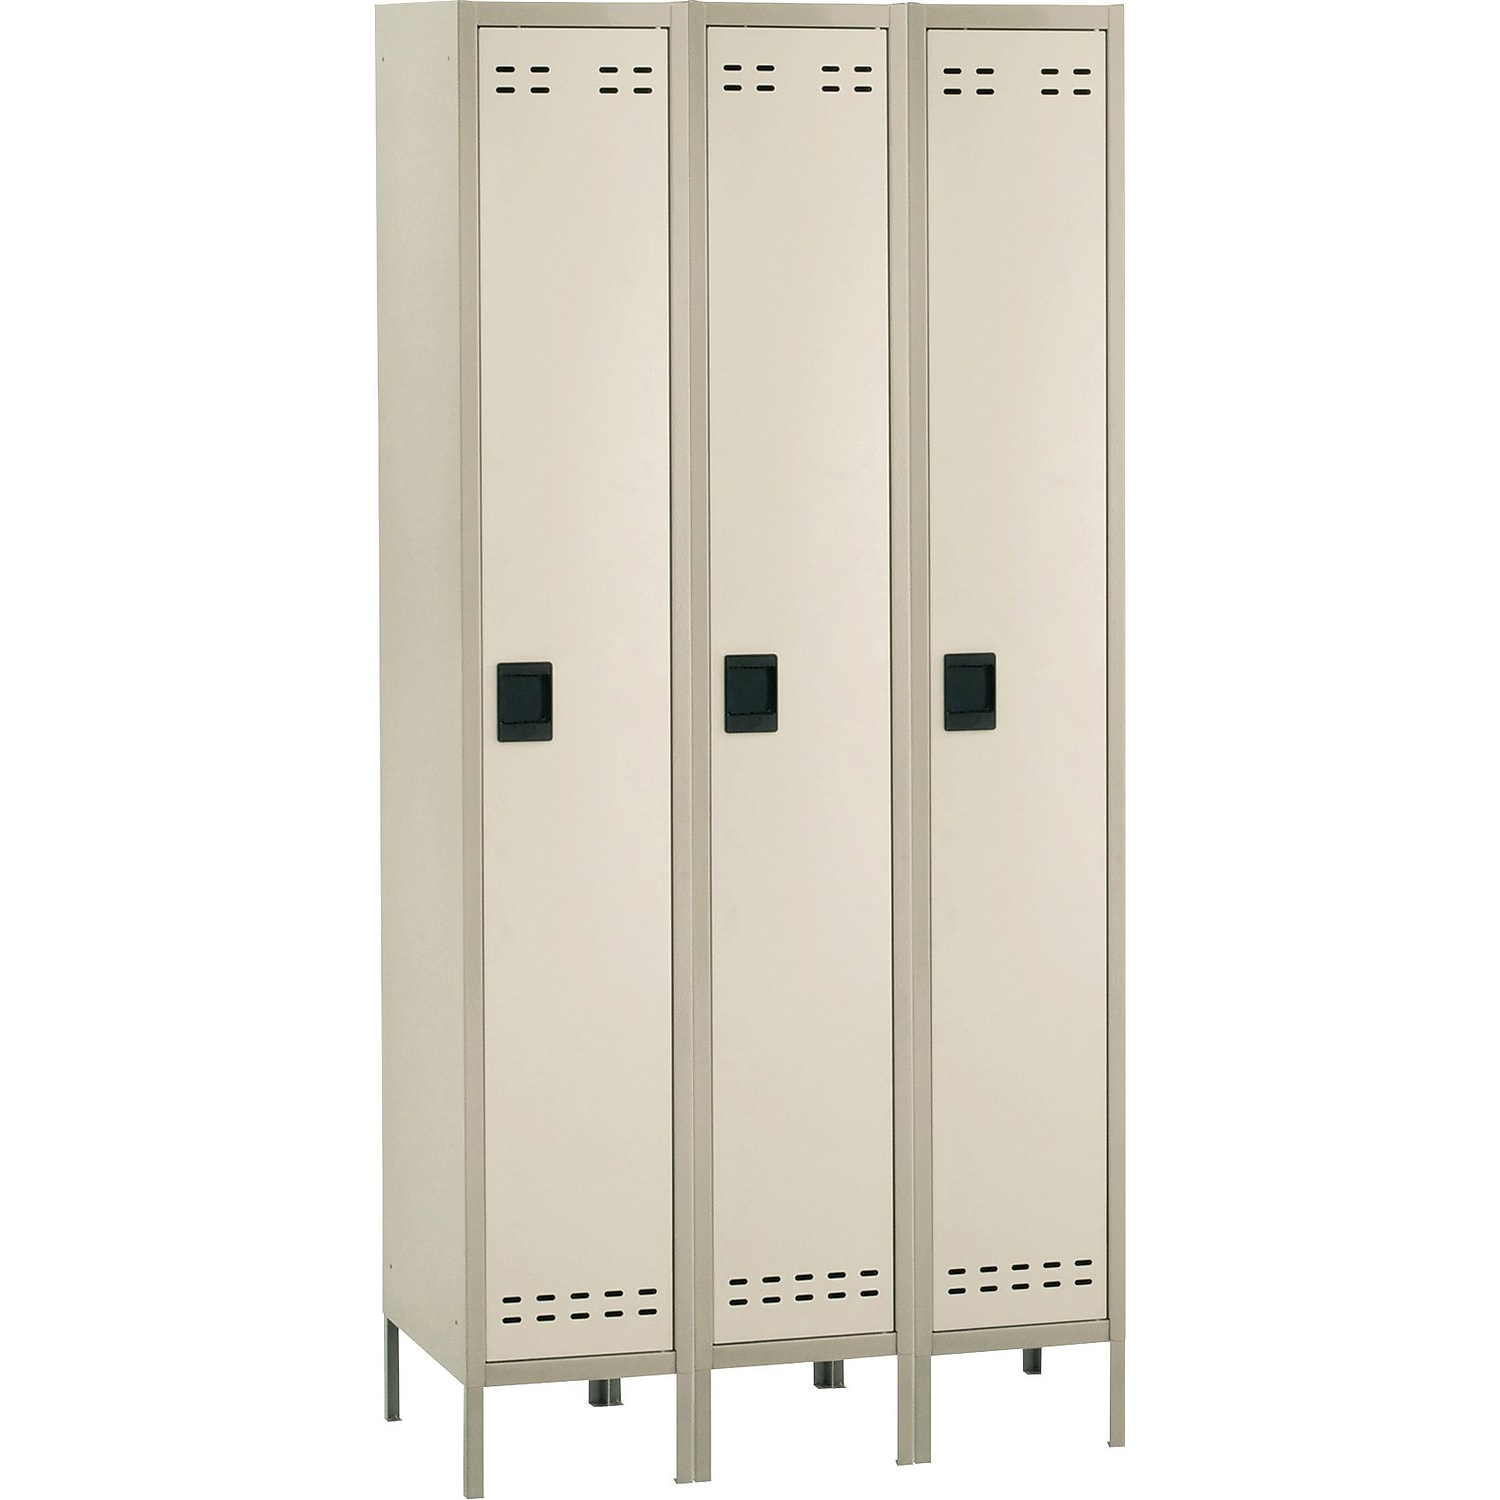 Safco Single Tier Locker 3 Column in Tan - image 2 of 2